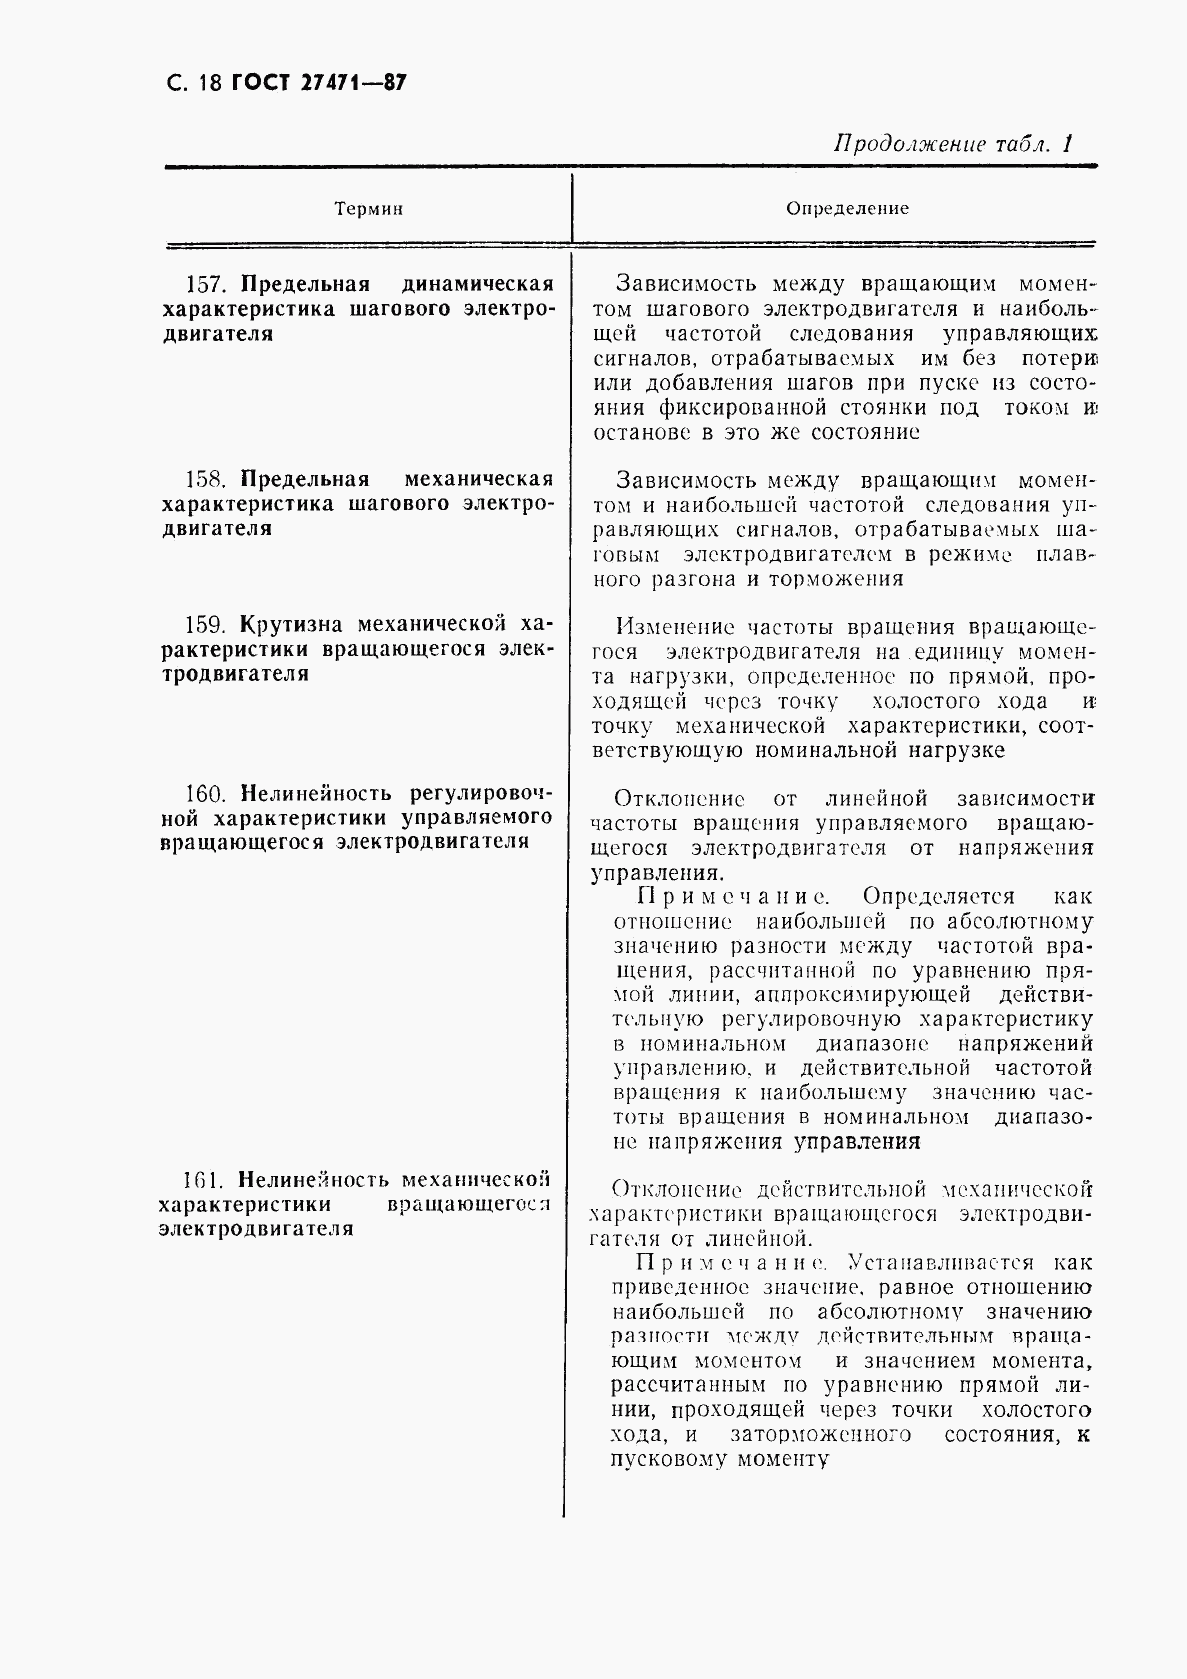 ГОСТ 27471-87, страница 19